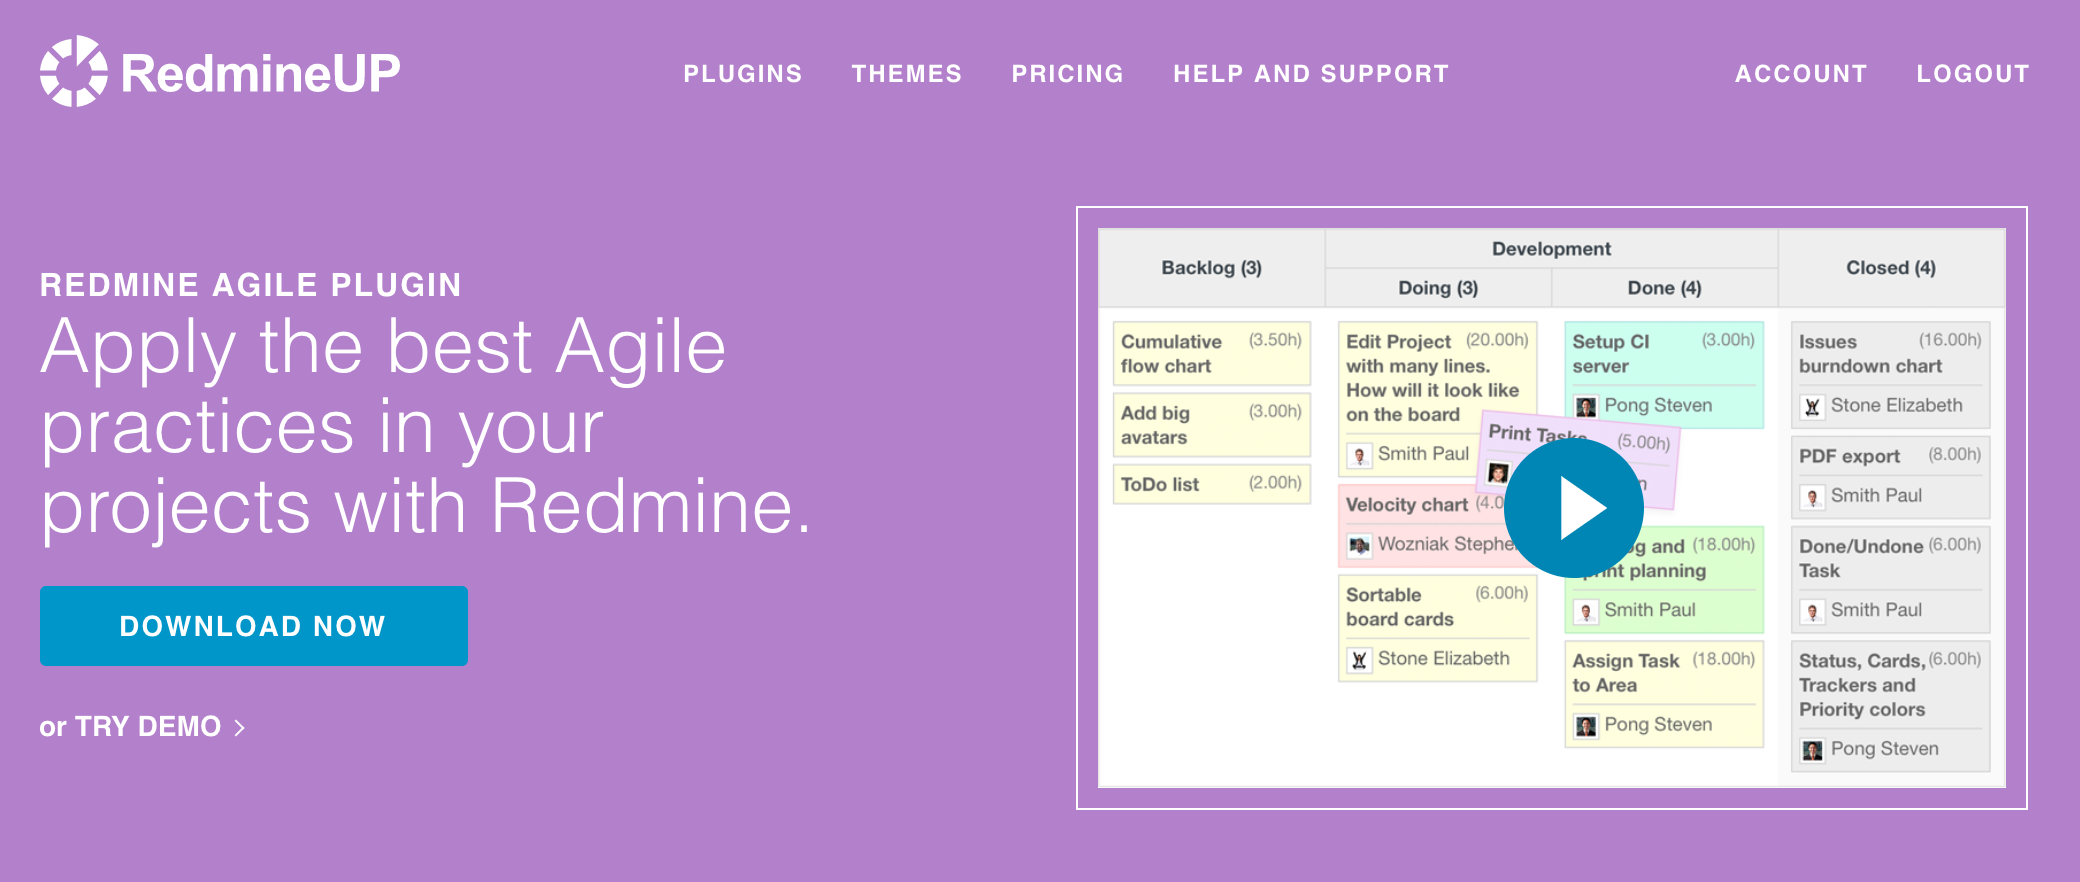 Redmine Agile Plugin - Download